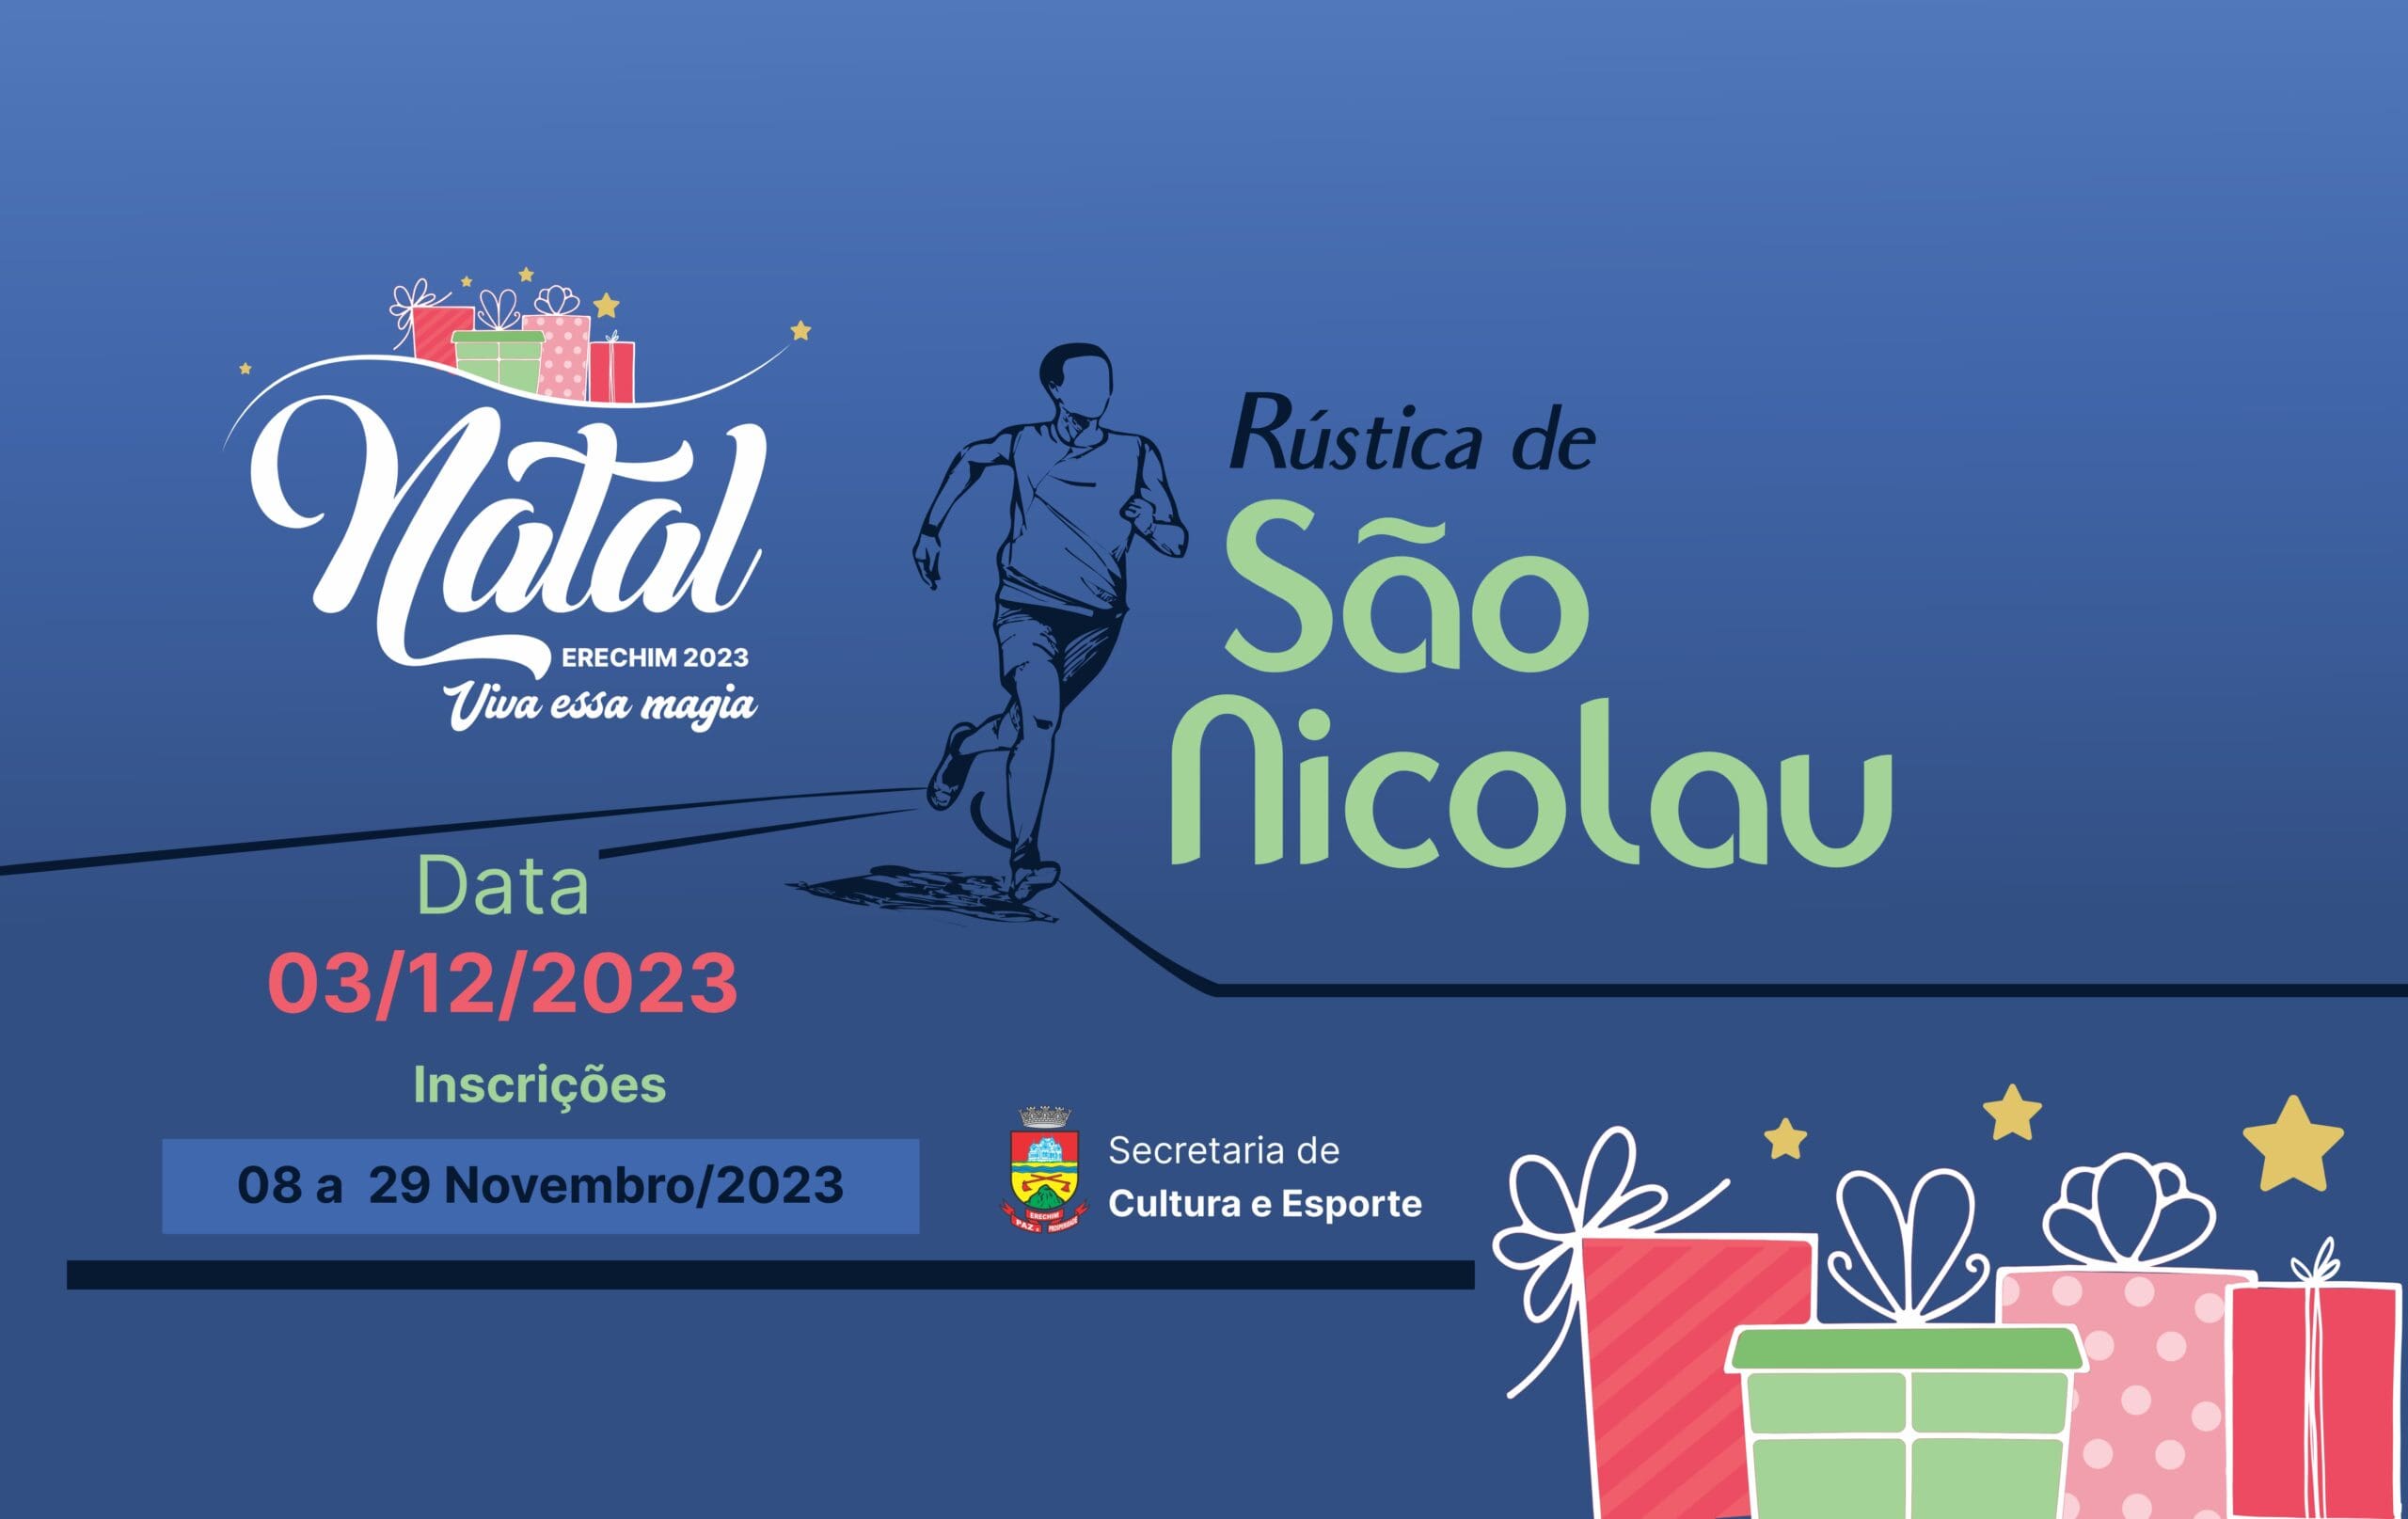 Inscricoes abertas para a Rustica de Sao Nicolau Natal Erechim 2023 scaled